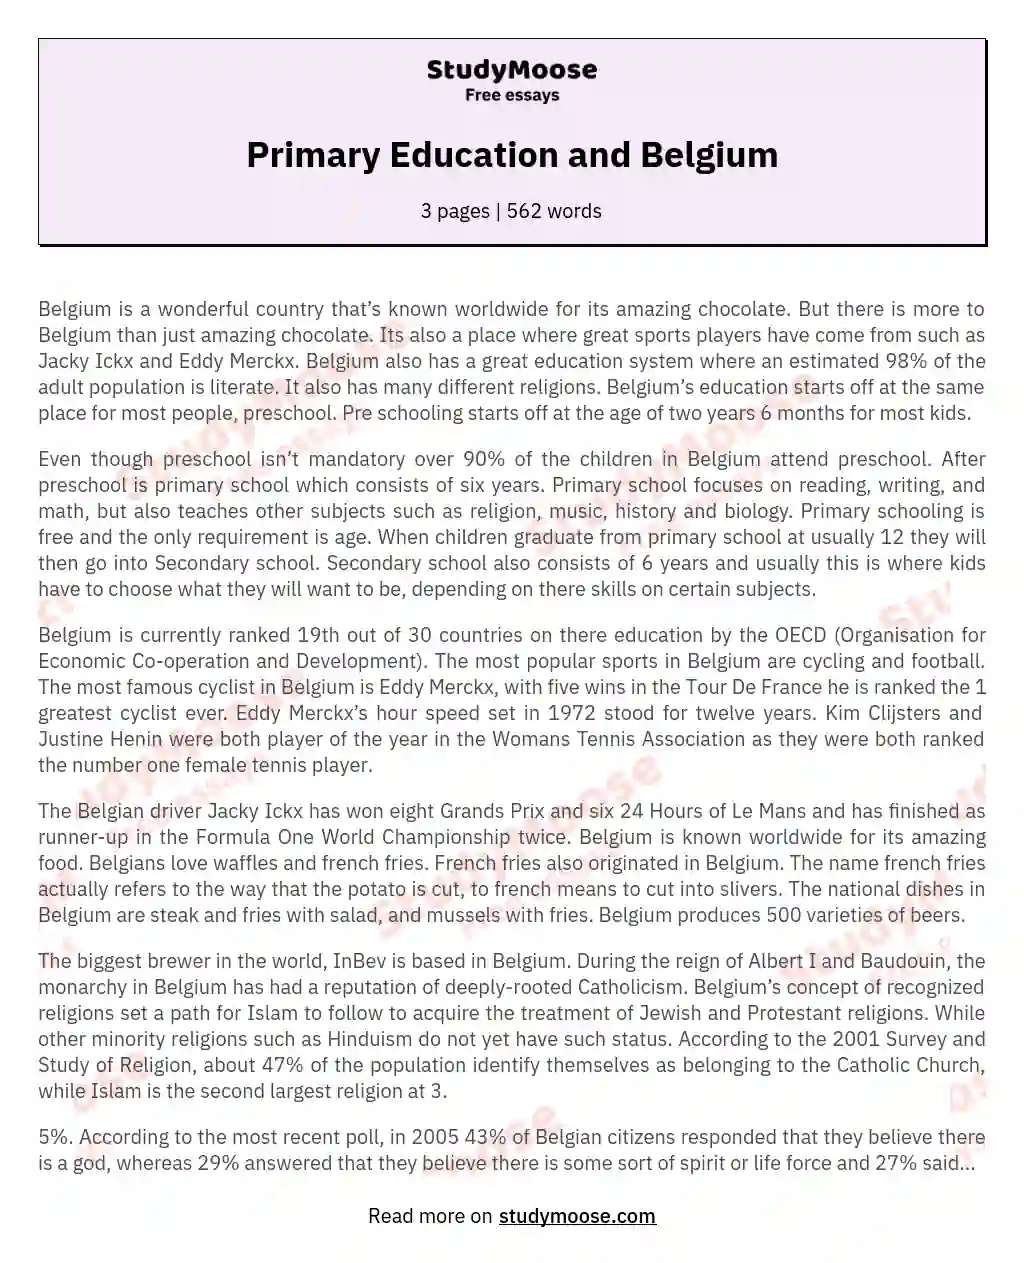 Primary Education and Belgium essay